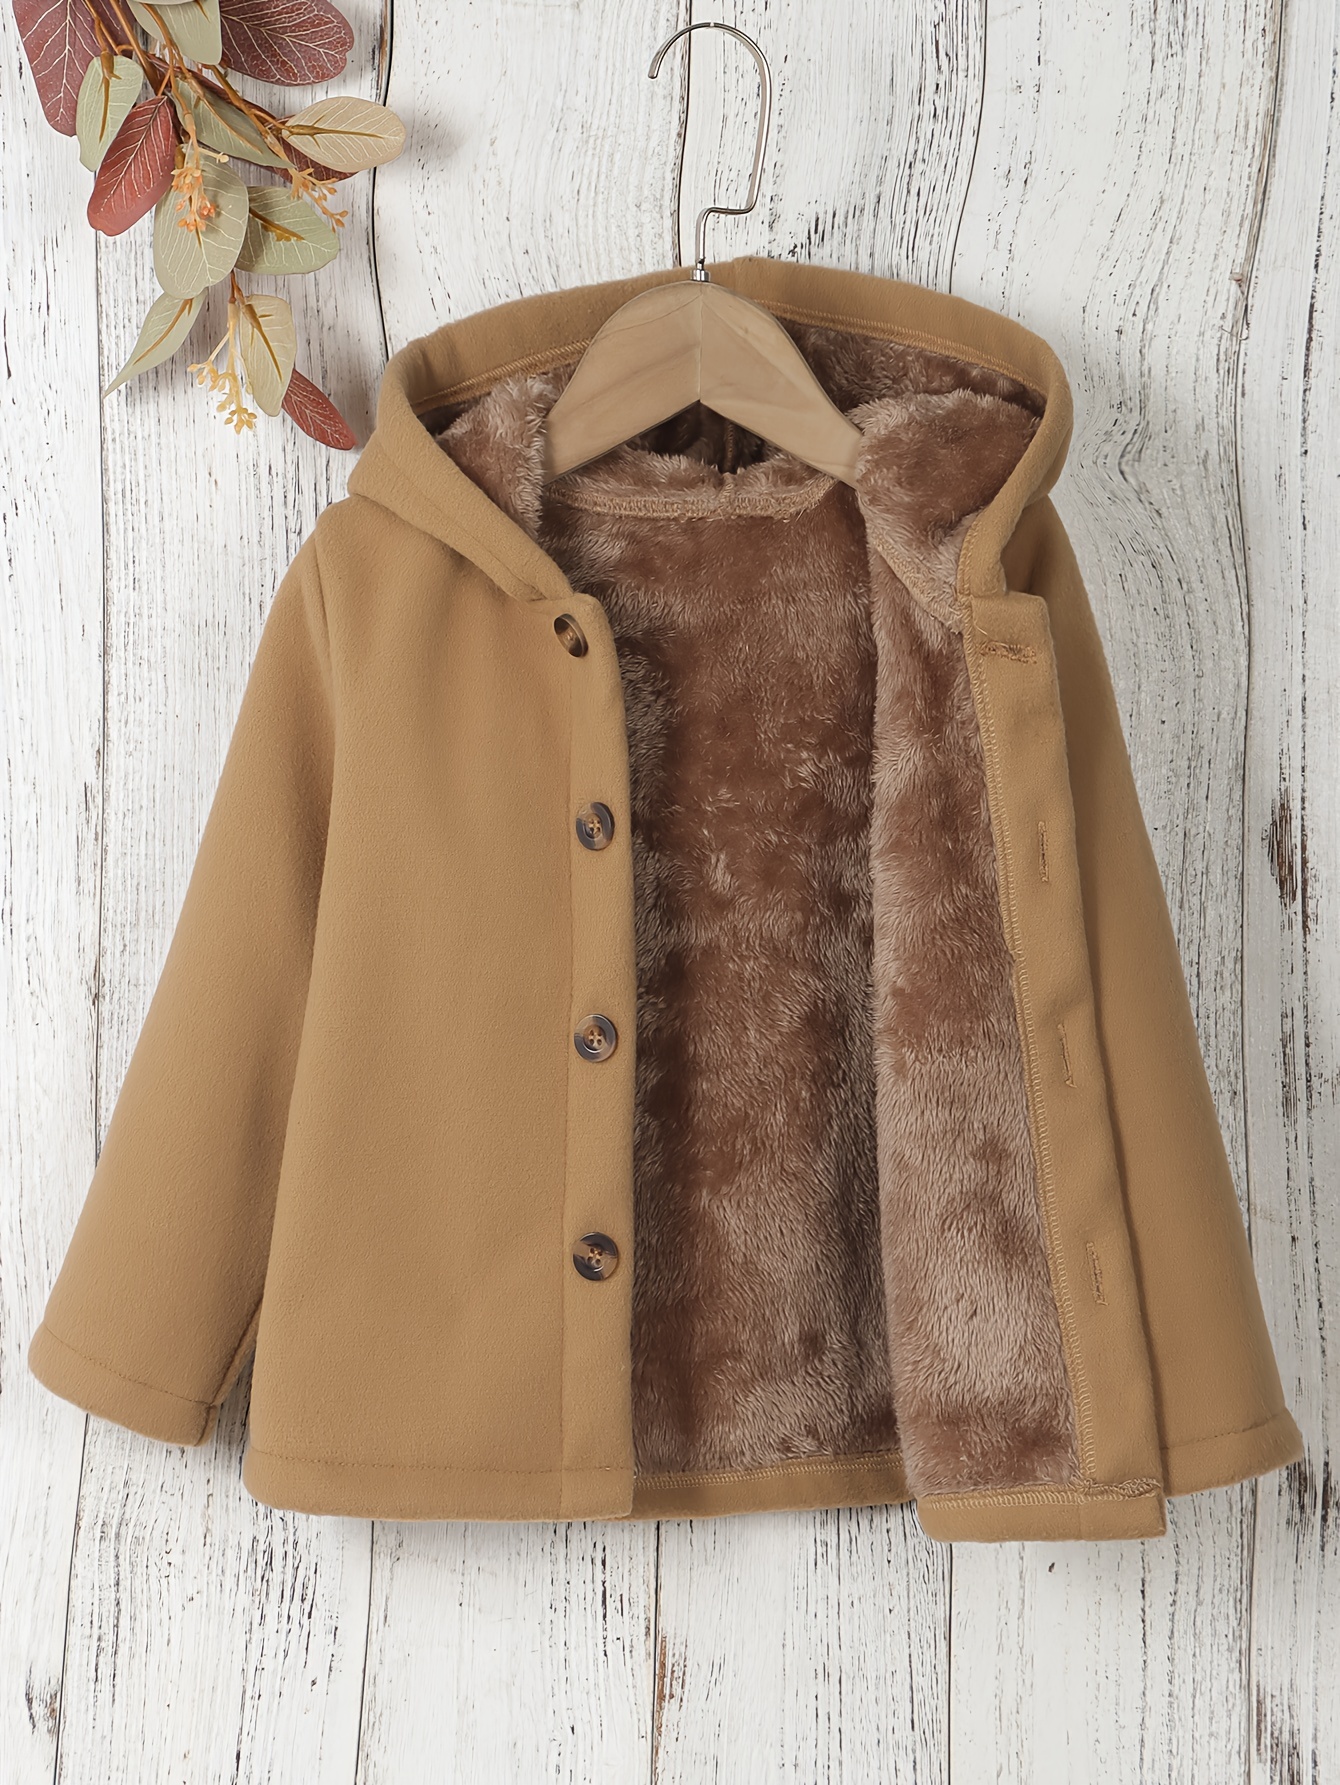 Chaqueta polar con capucha y botones, sudaderas con capucha casuales de manga larga para otoño e invierno, todos los días